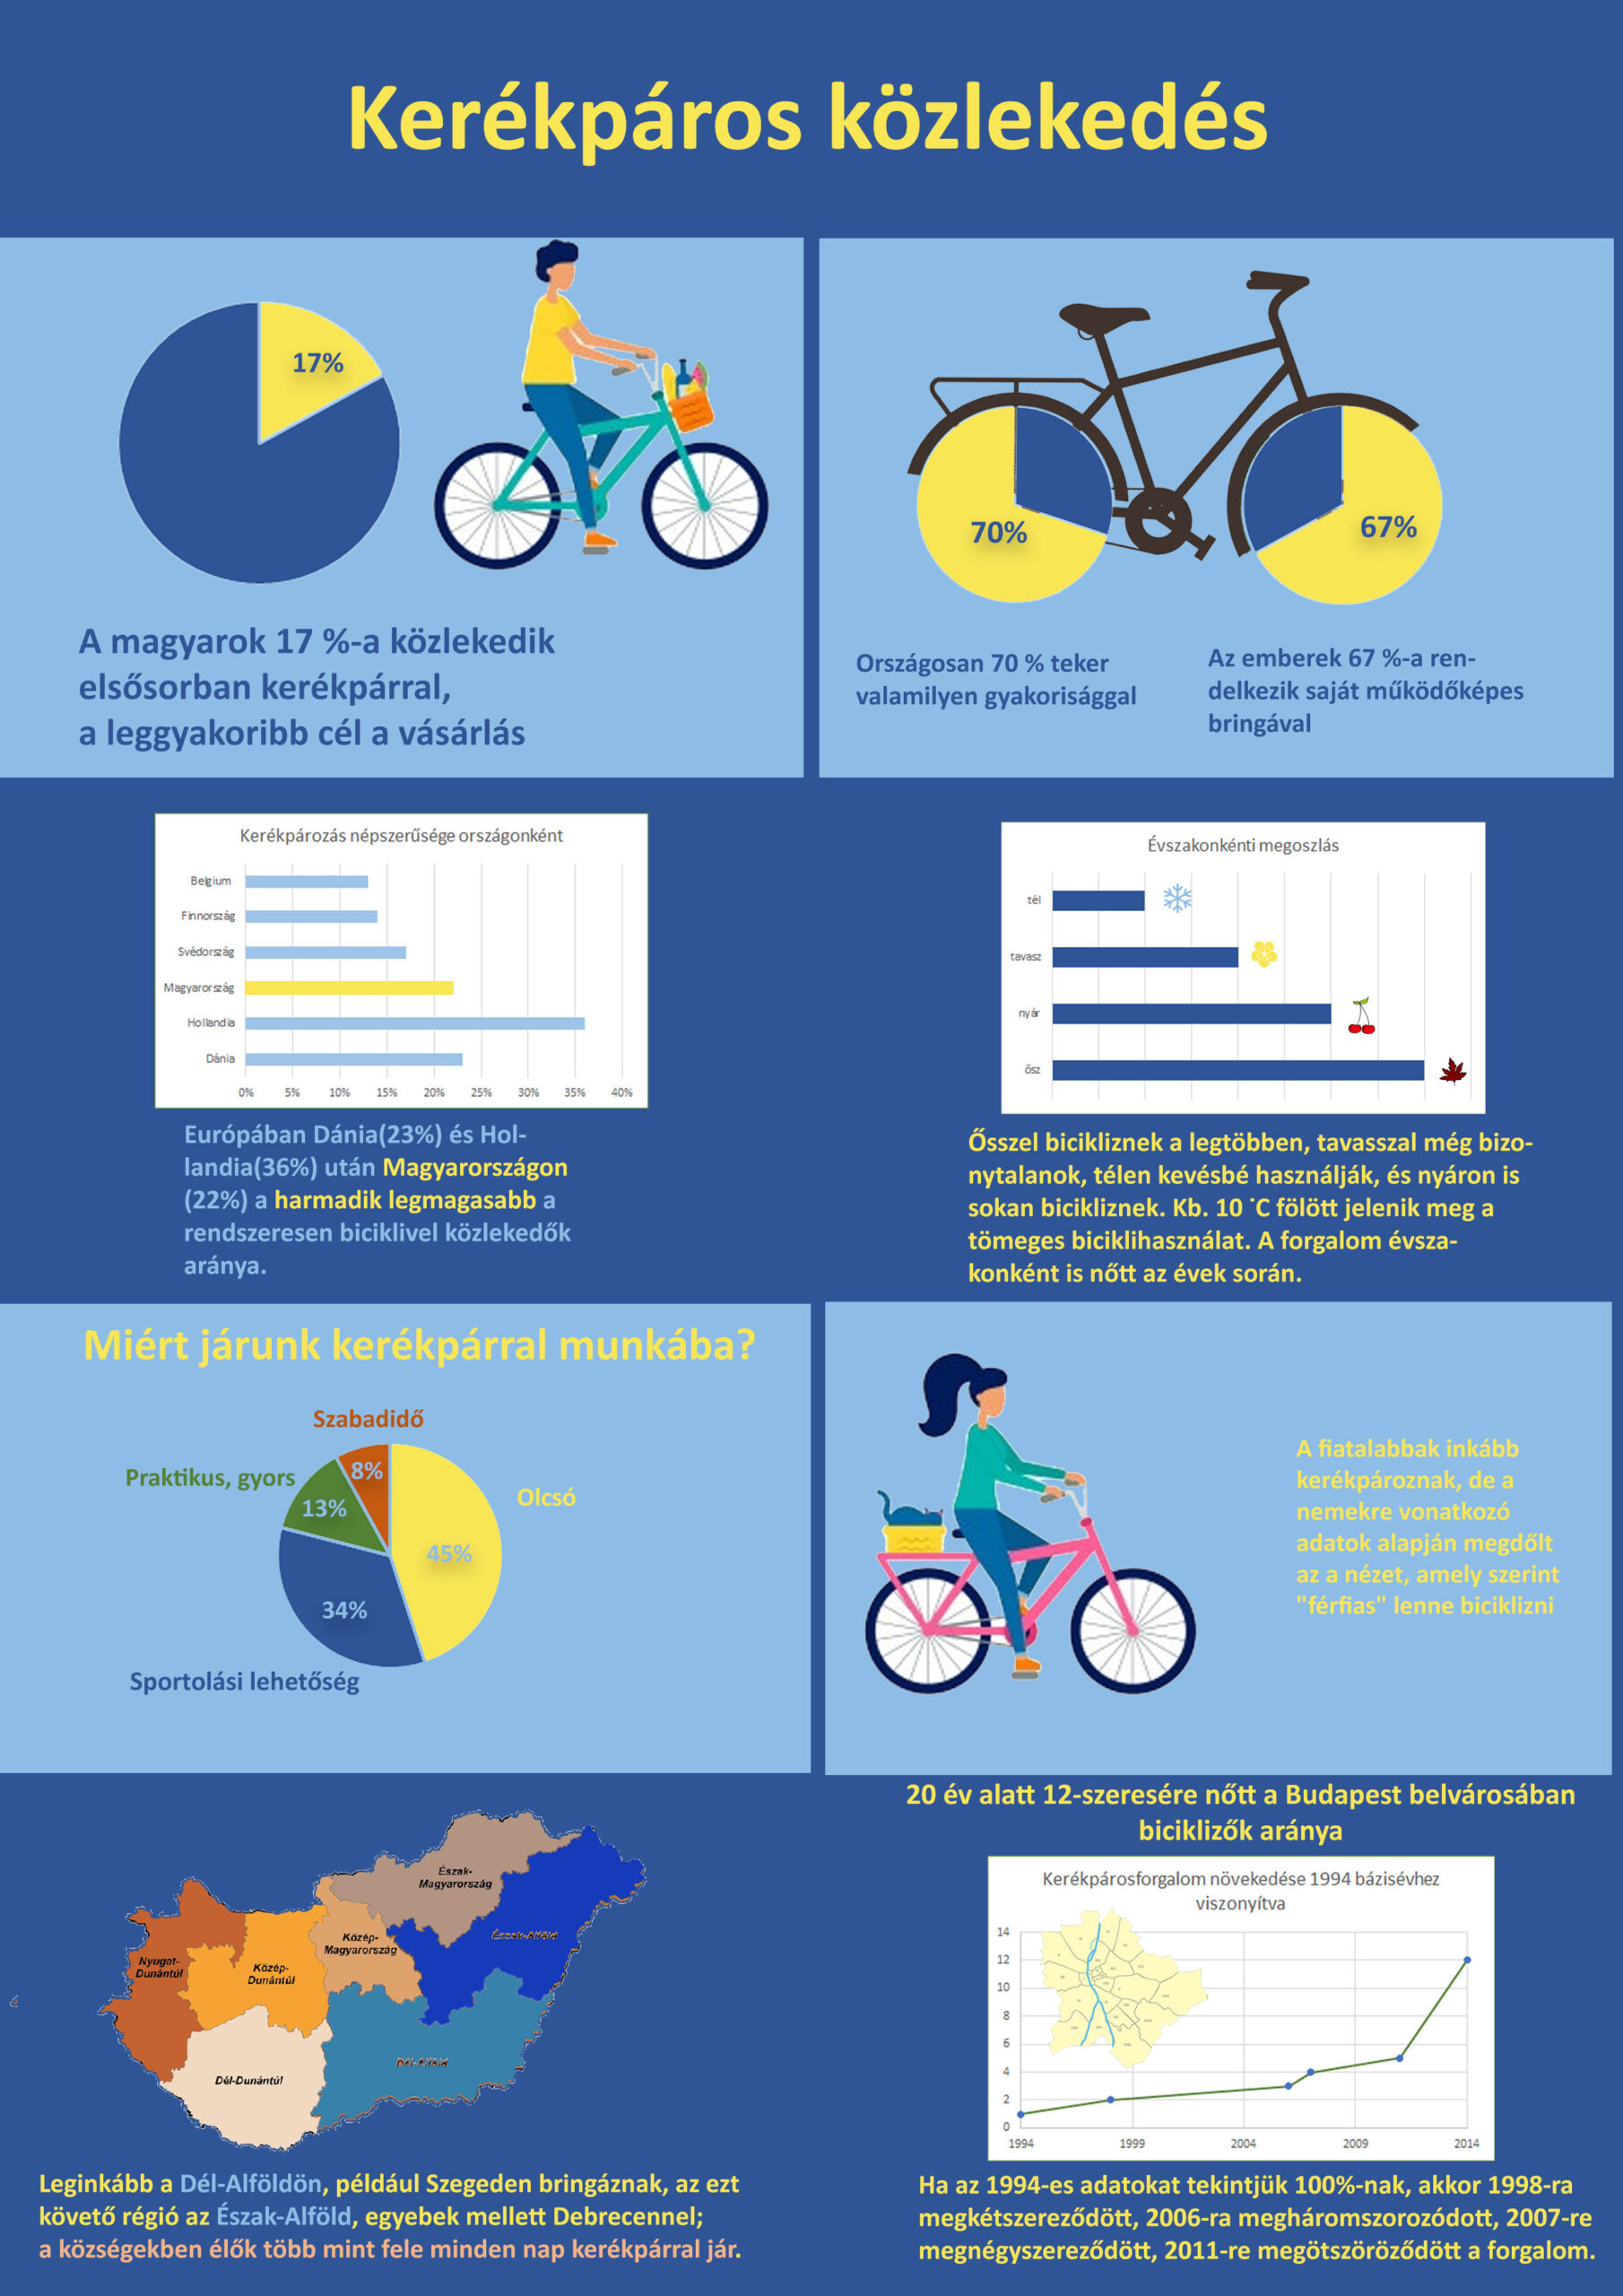 Infografika a kerékpáros közlekedésről